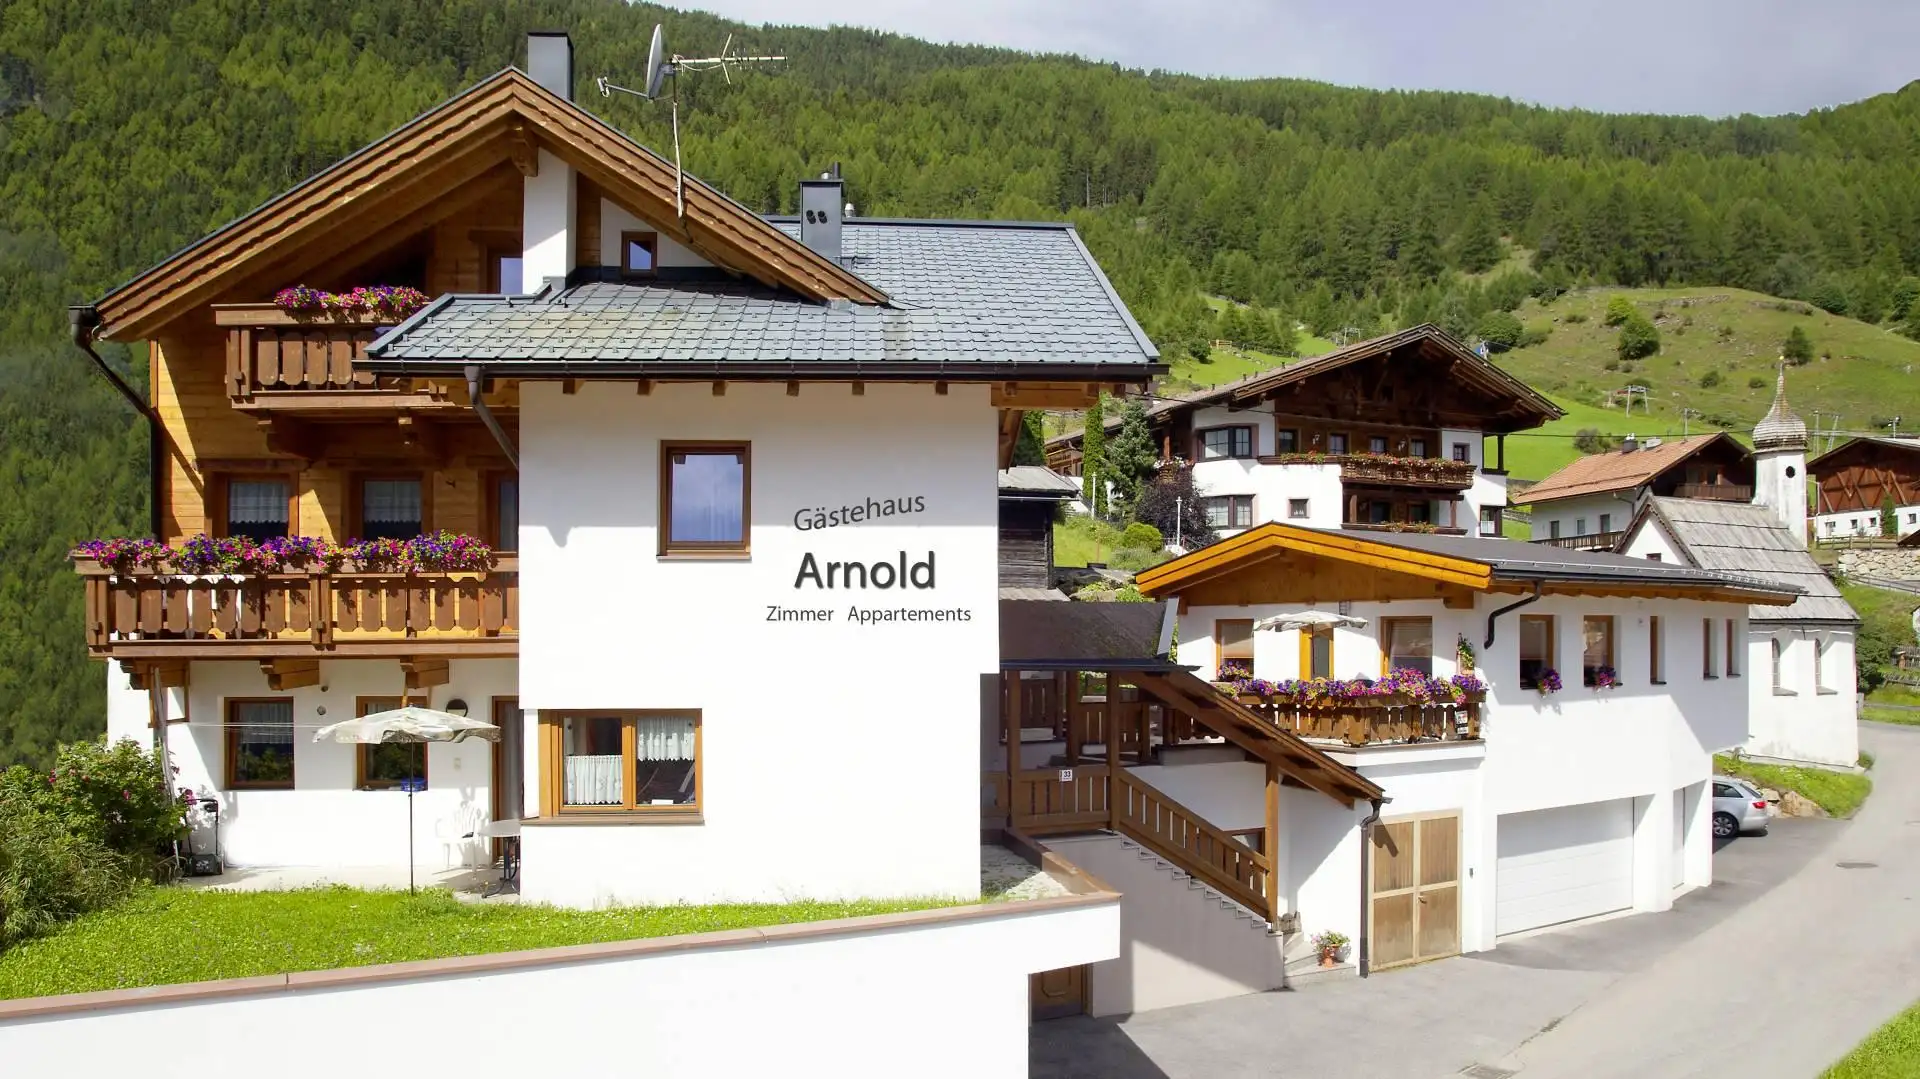 Gästehaus Arnold #Willkommen#Wohneinheiten#Preise#Anfragen#Buchen#Bildergalerie#Impressum#Sitemap#Sommer